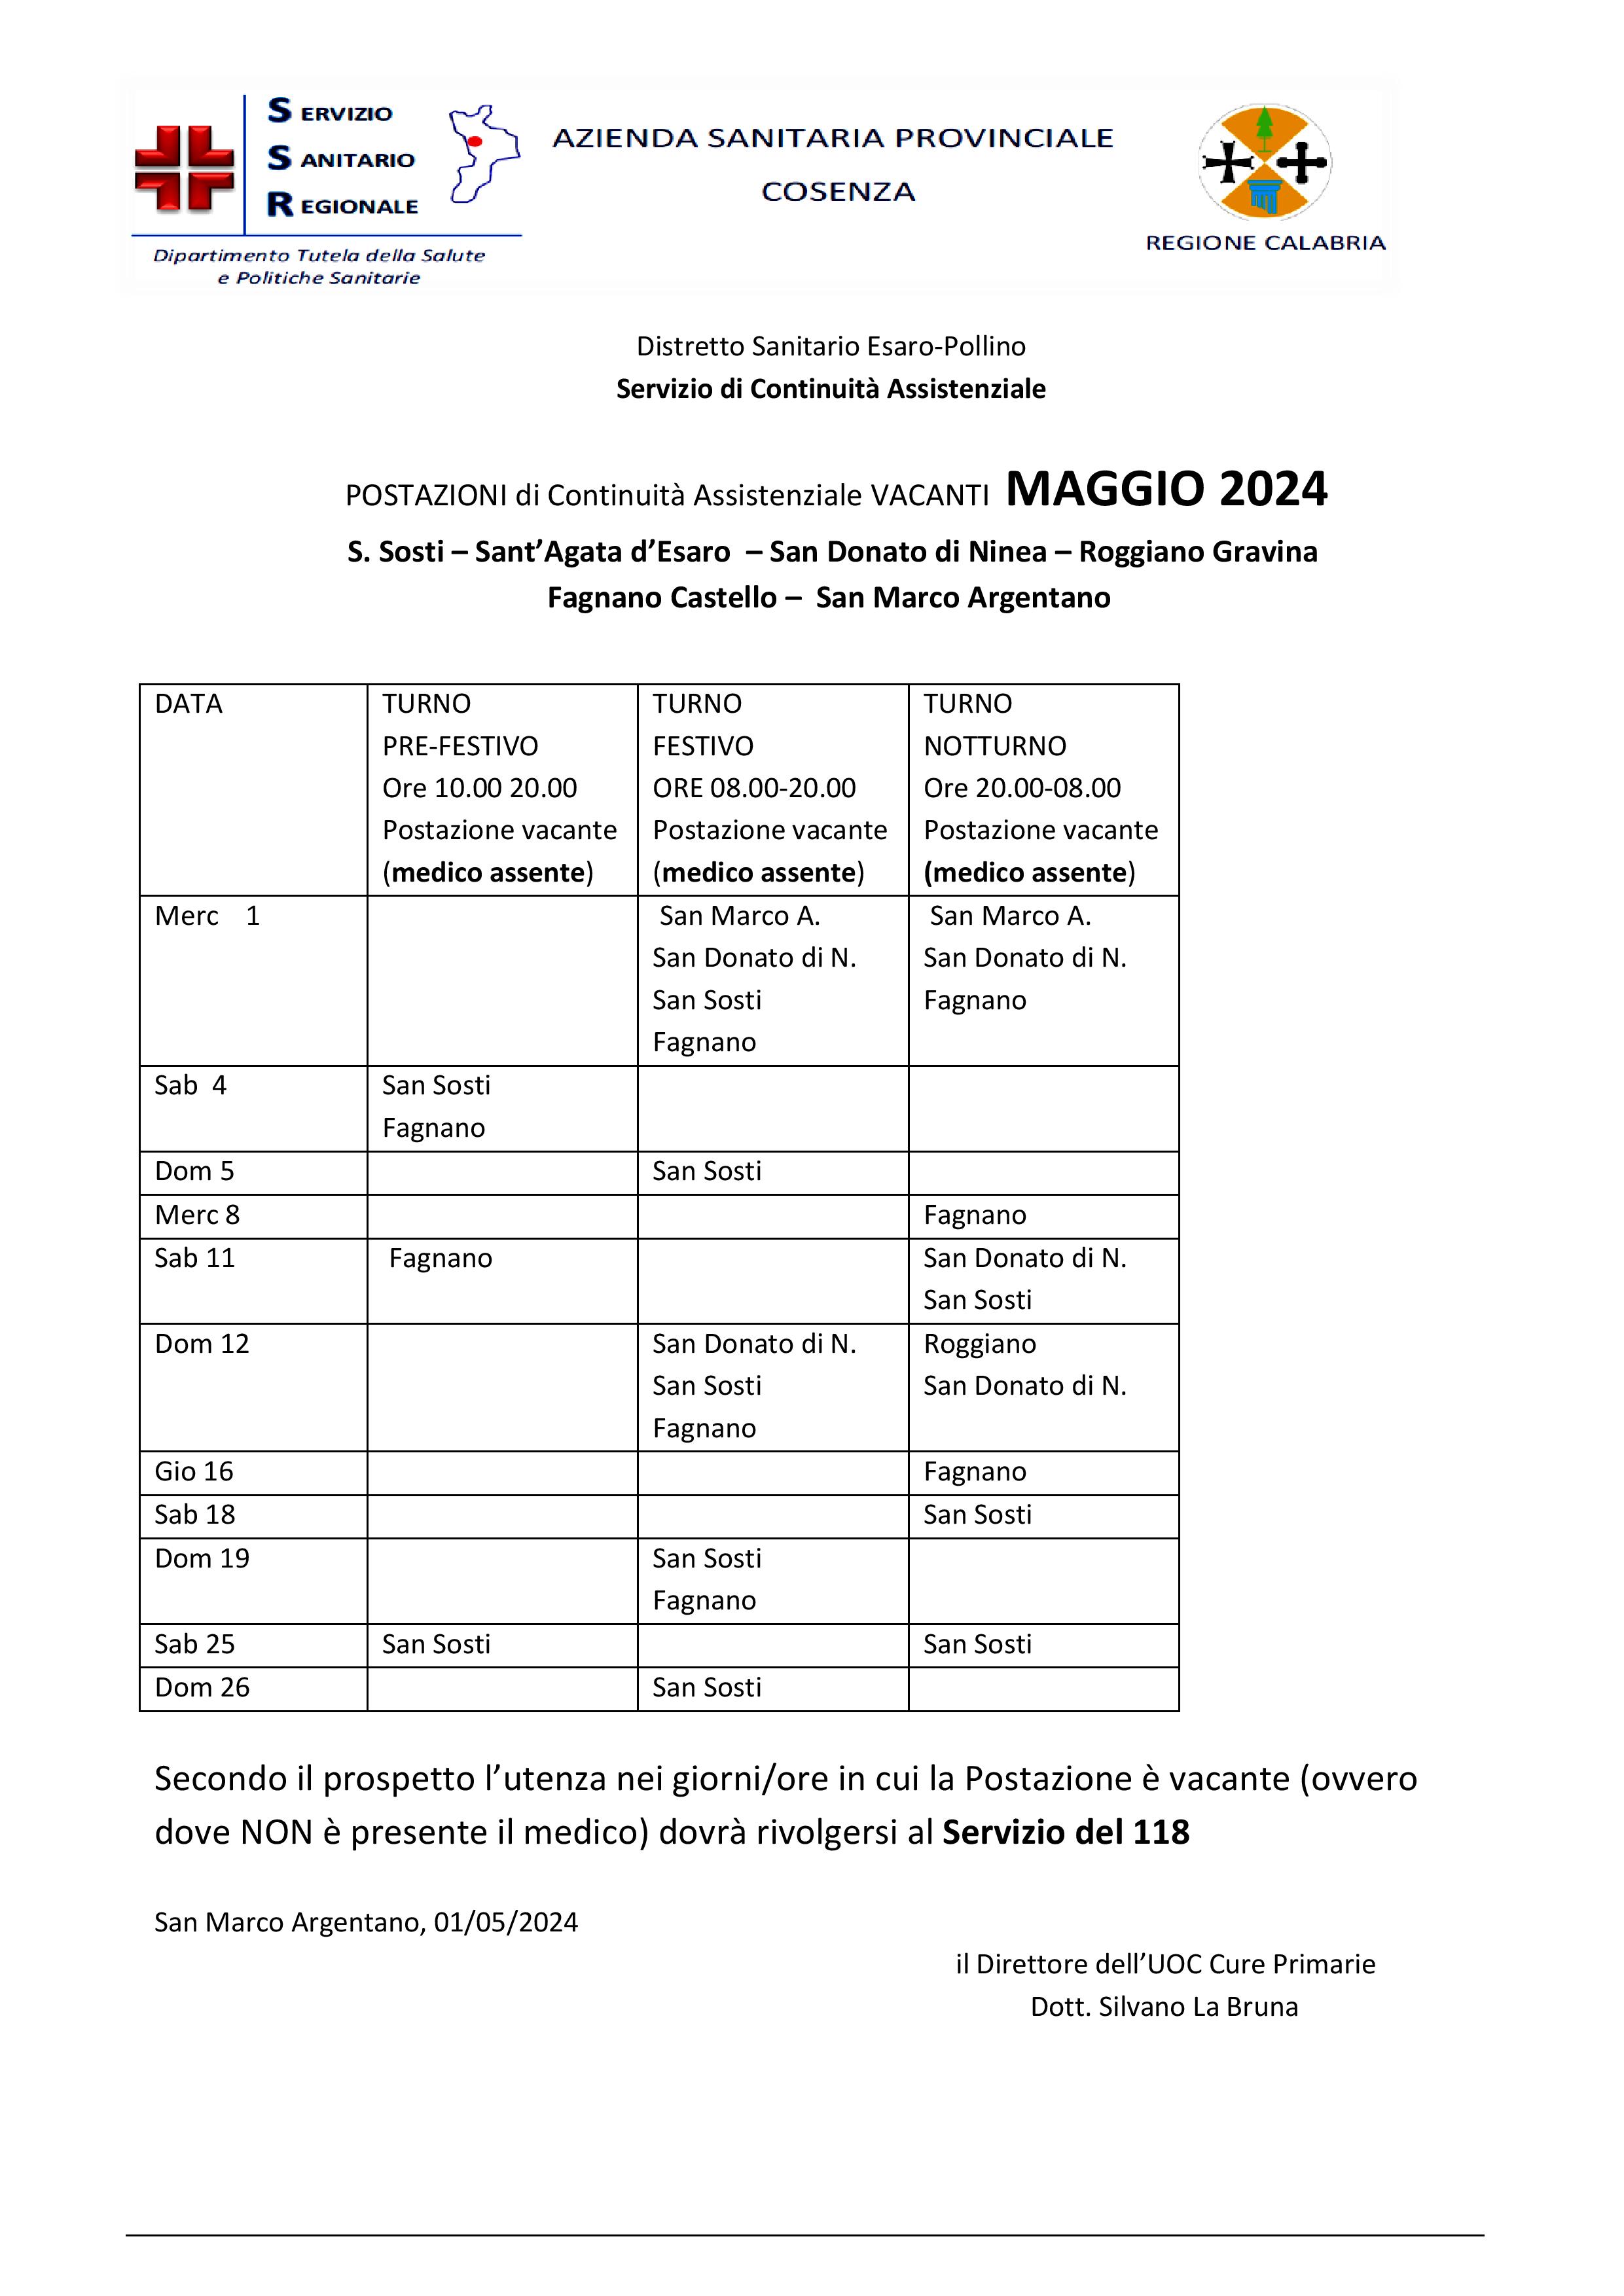 POSTAZIONI di Continuità Assistenziale VACANTI MAGGIO 2024